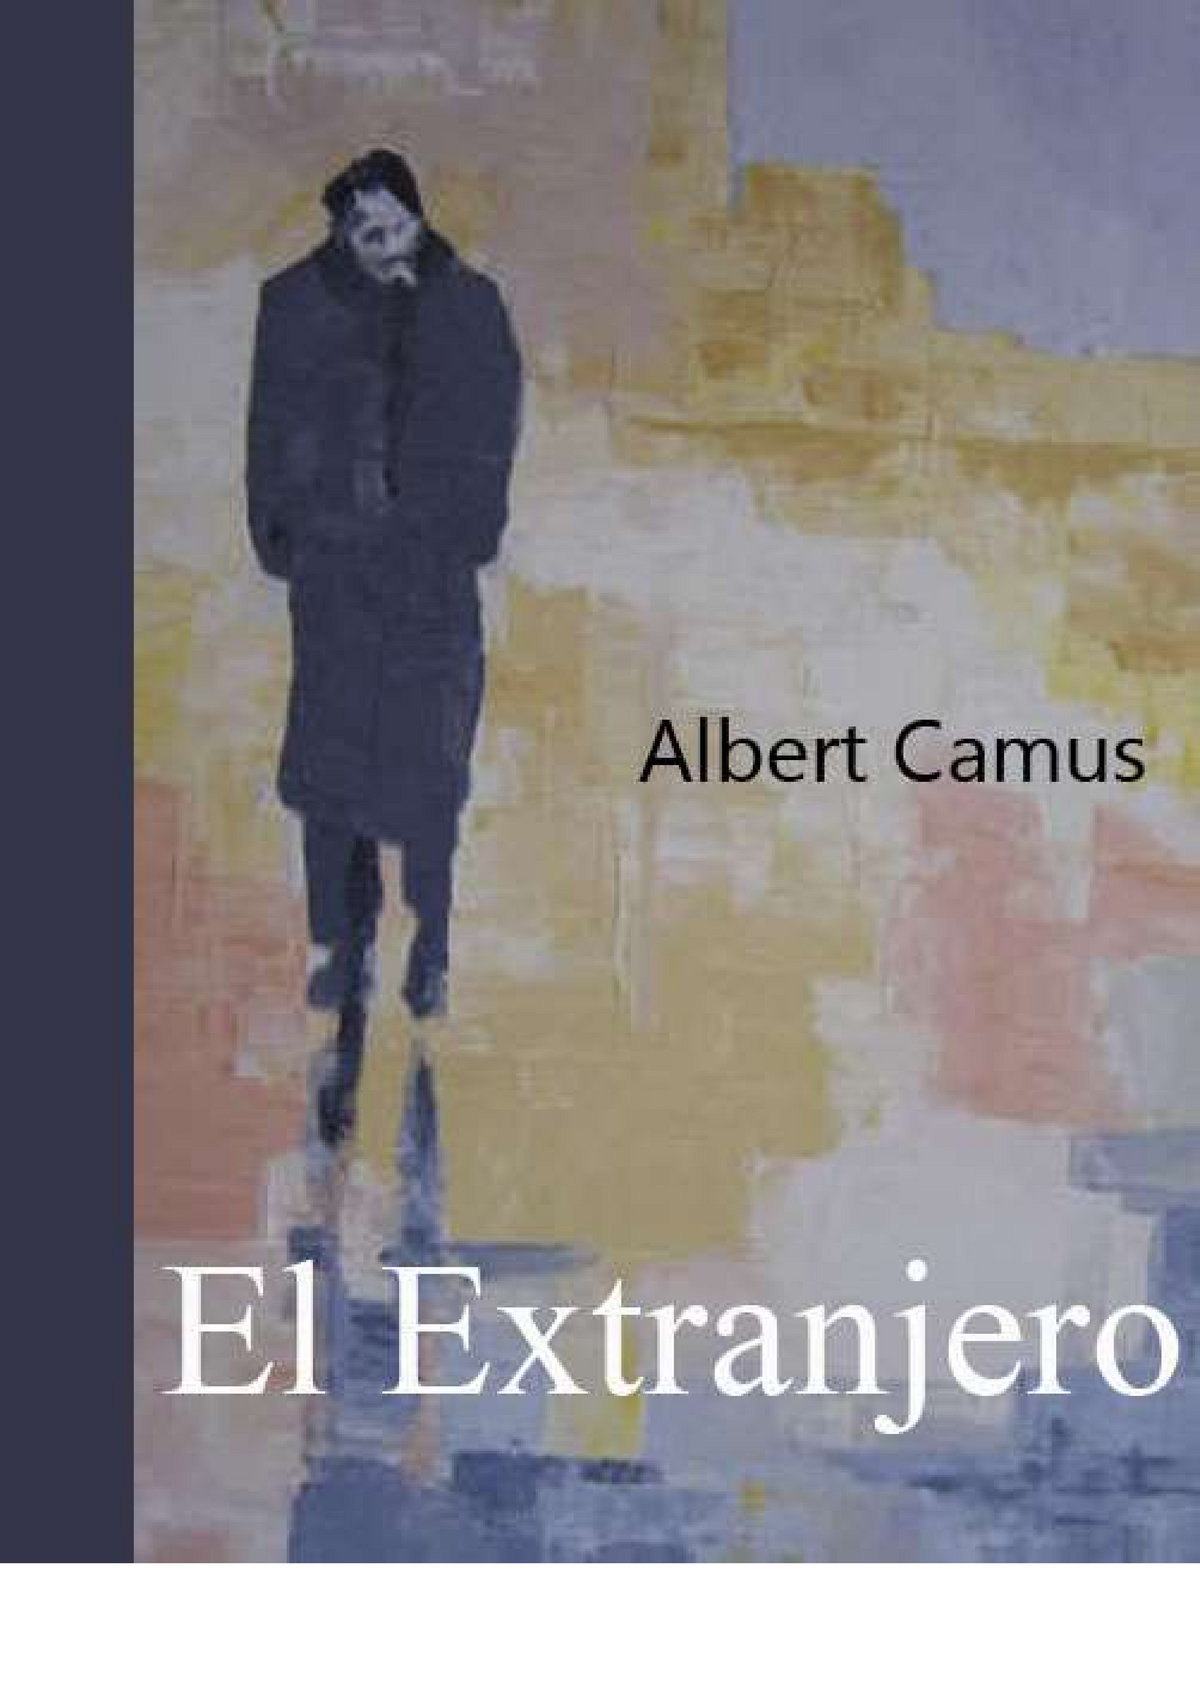 Albert Camus - El extranjero - Catequesis - Studocu